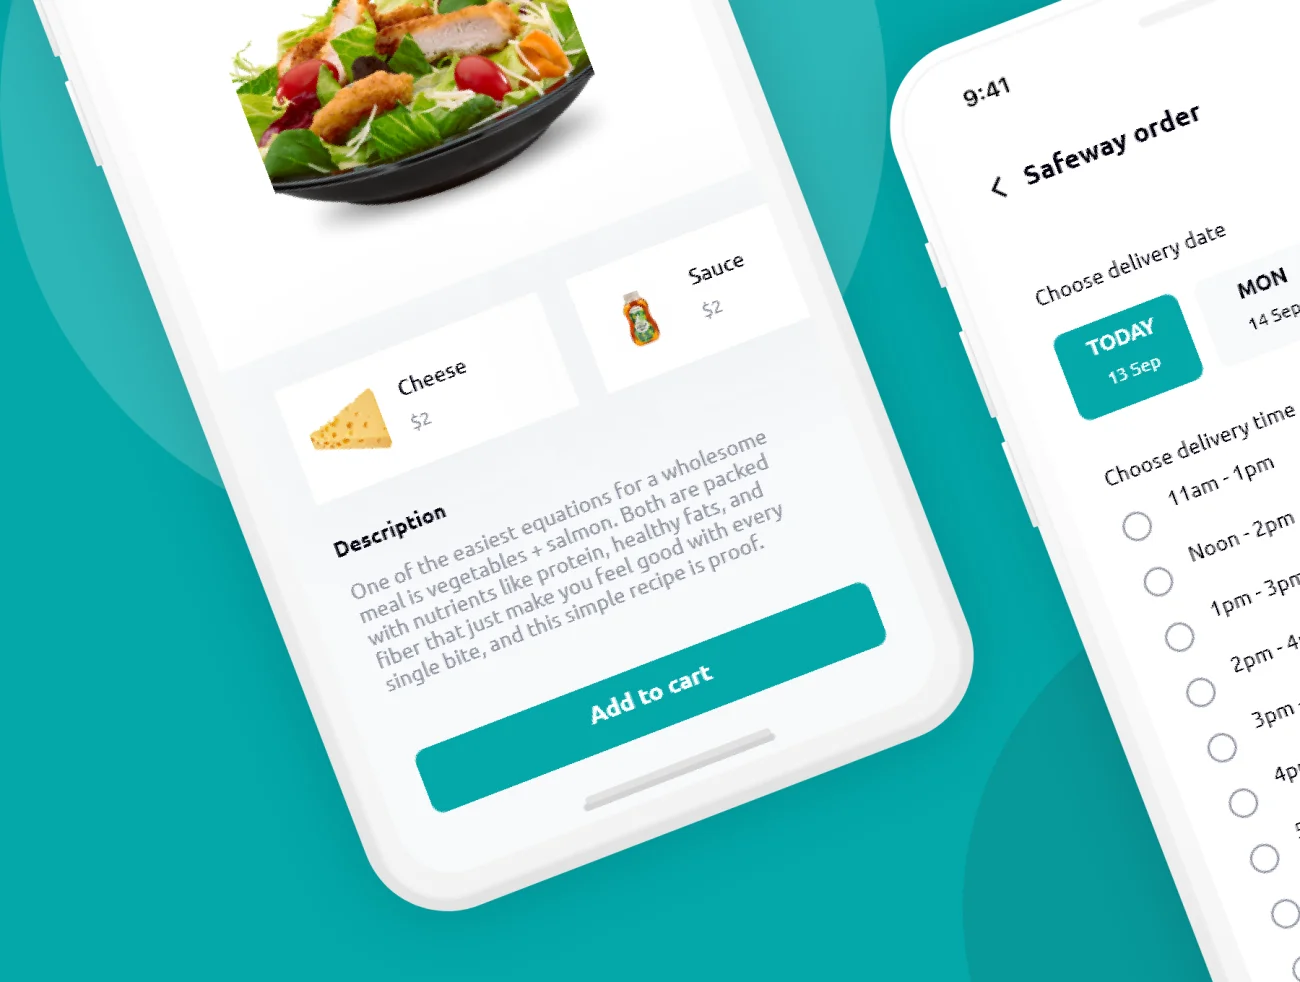 60屏在线点餐送餐快递跟踪应用UI设计套件 Easy eat插图5